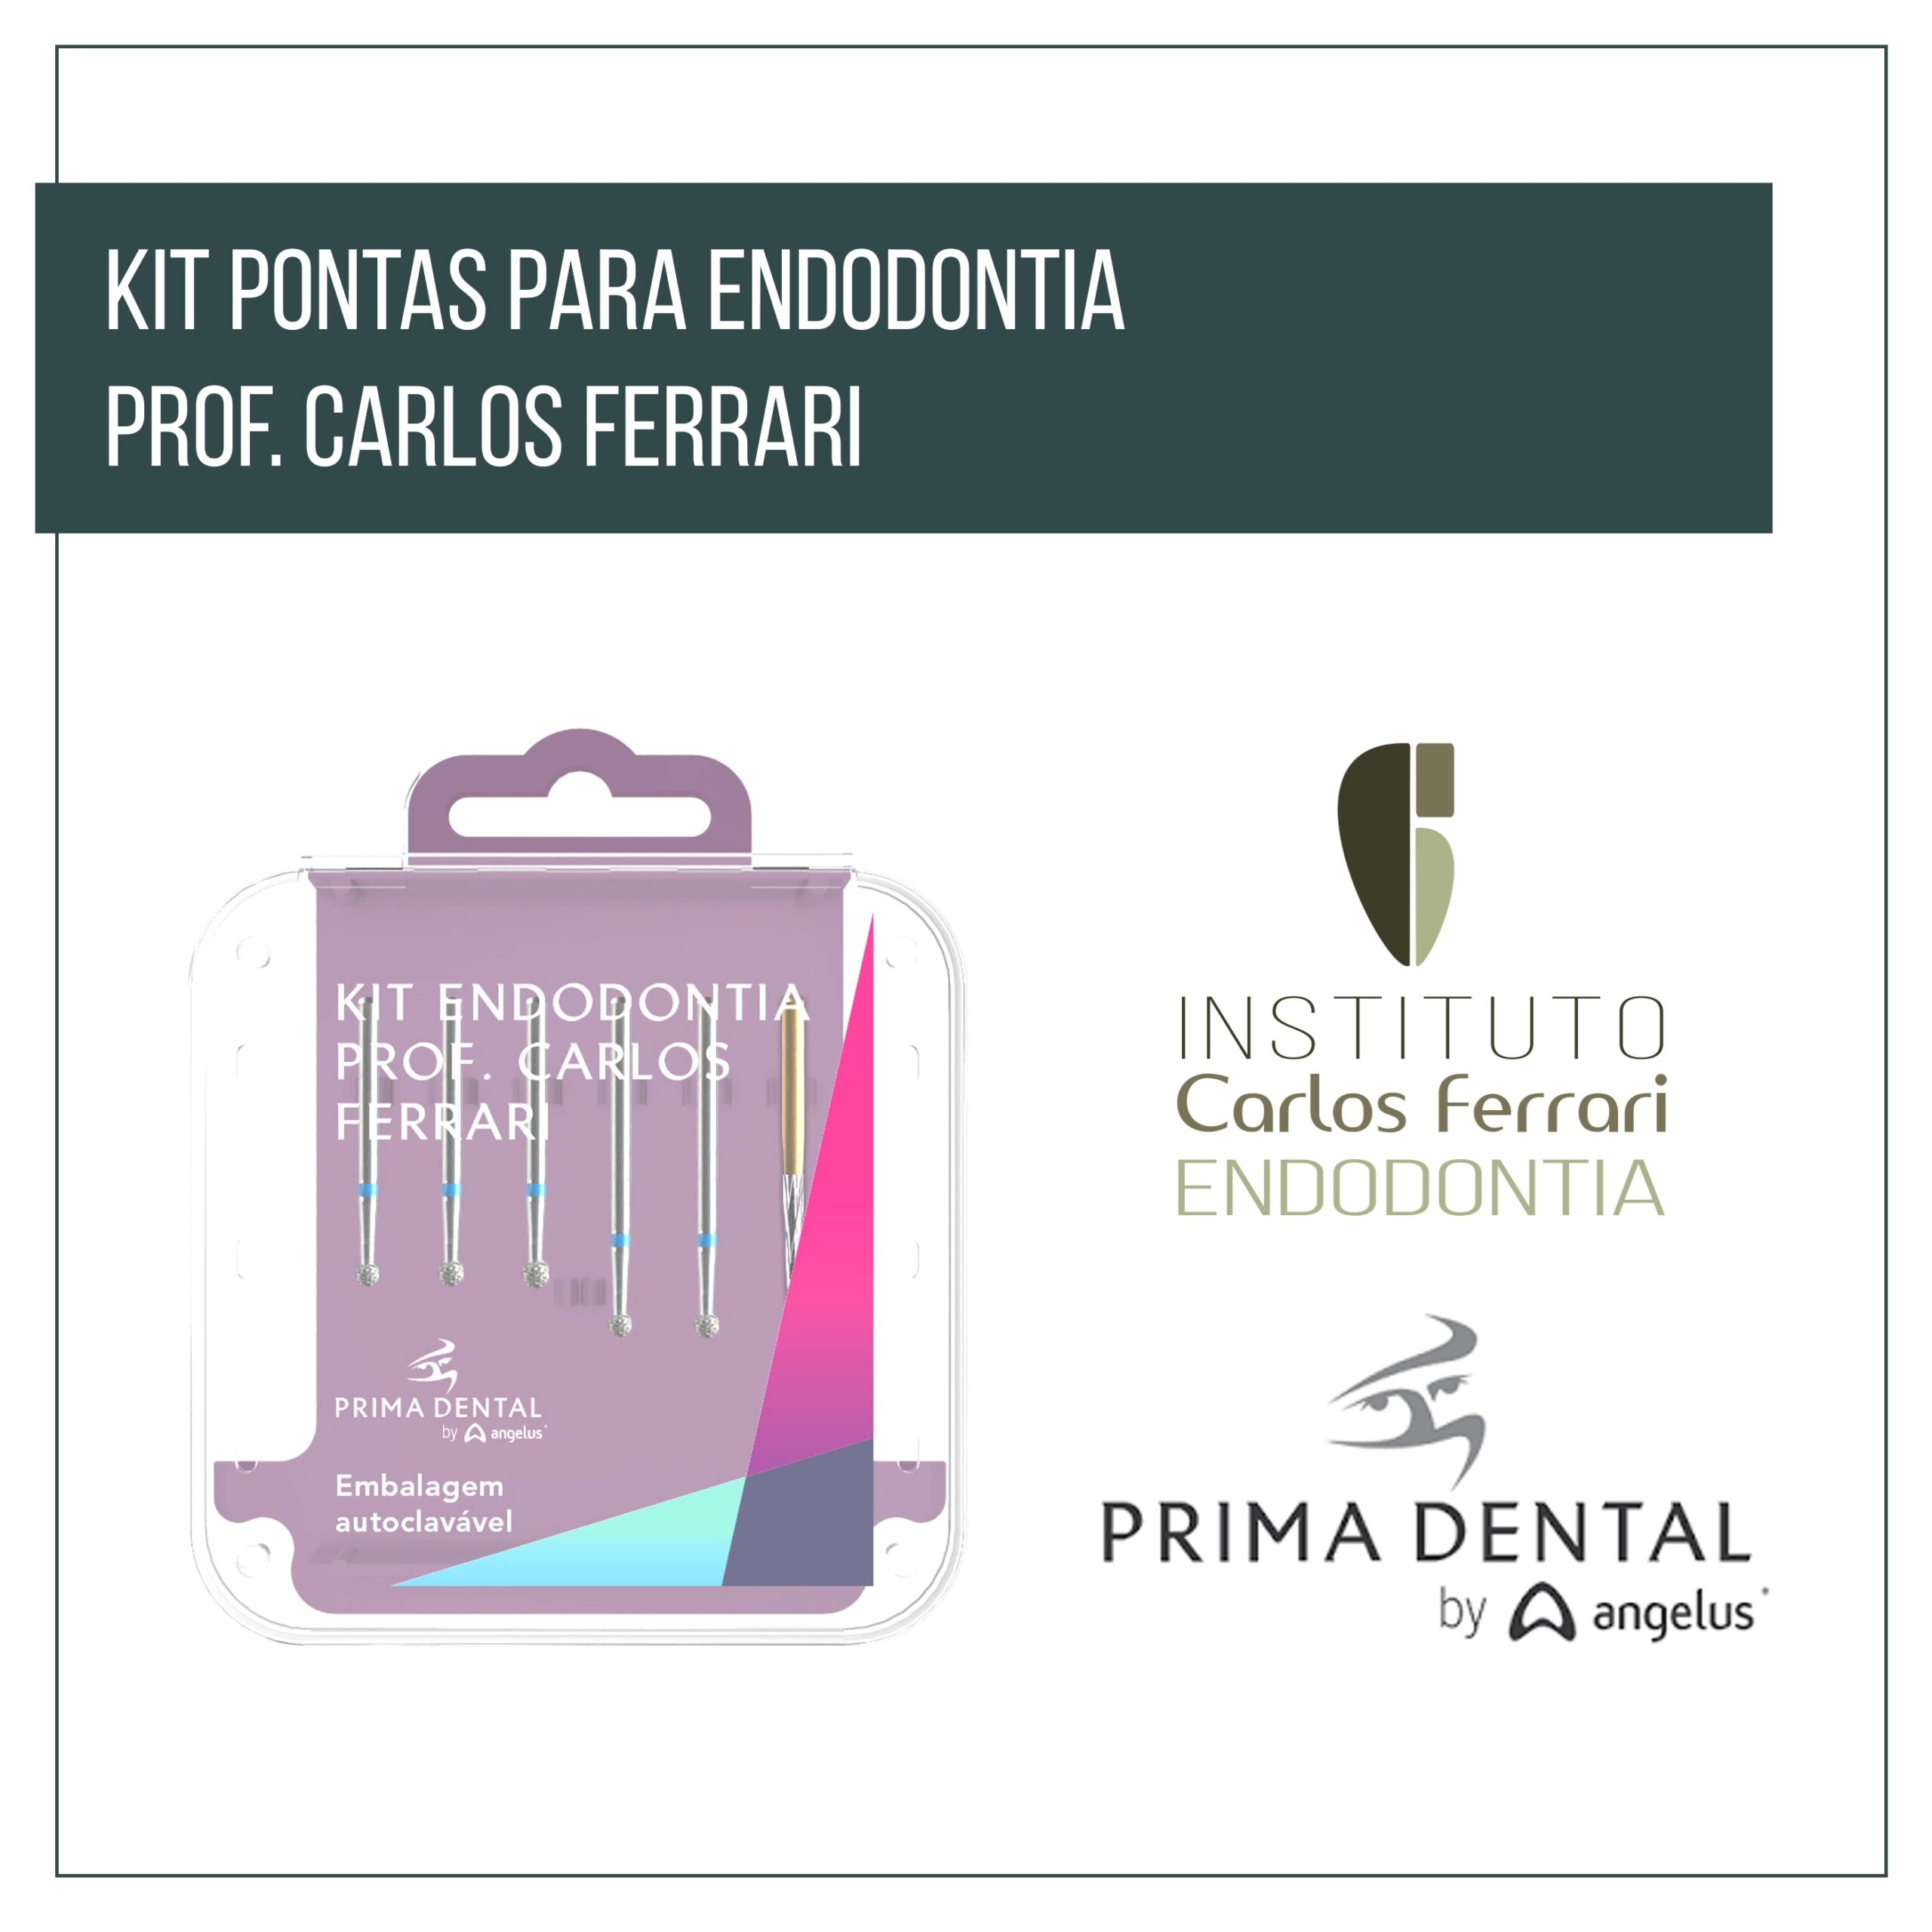 您目前正在查看牙髓病学的钻石技巧。Kit Carlos Ferrari教授。